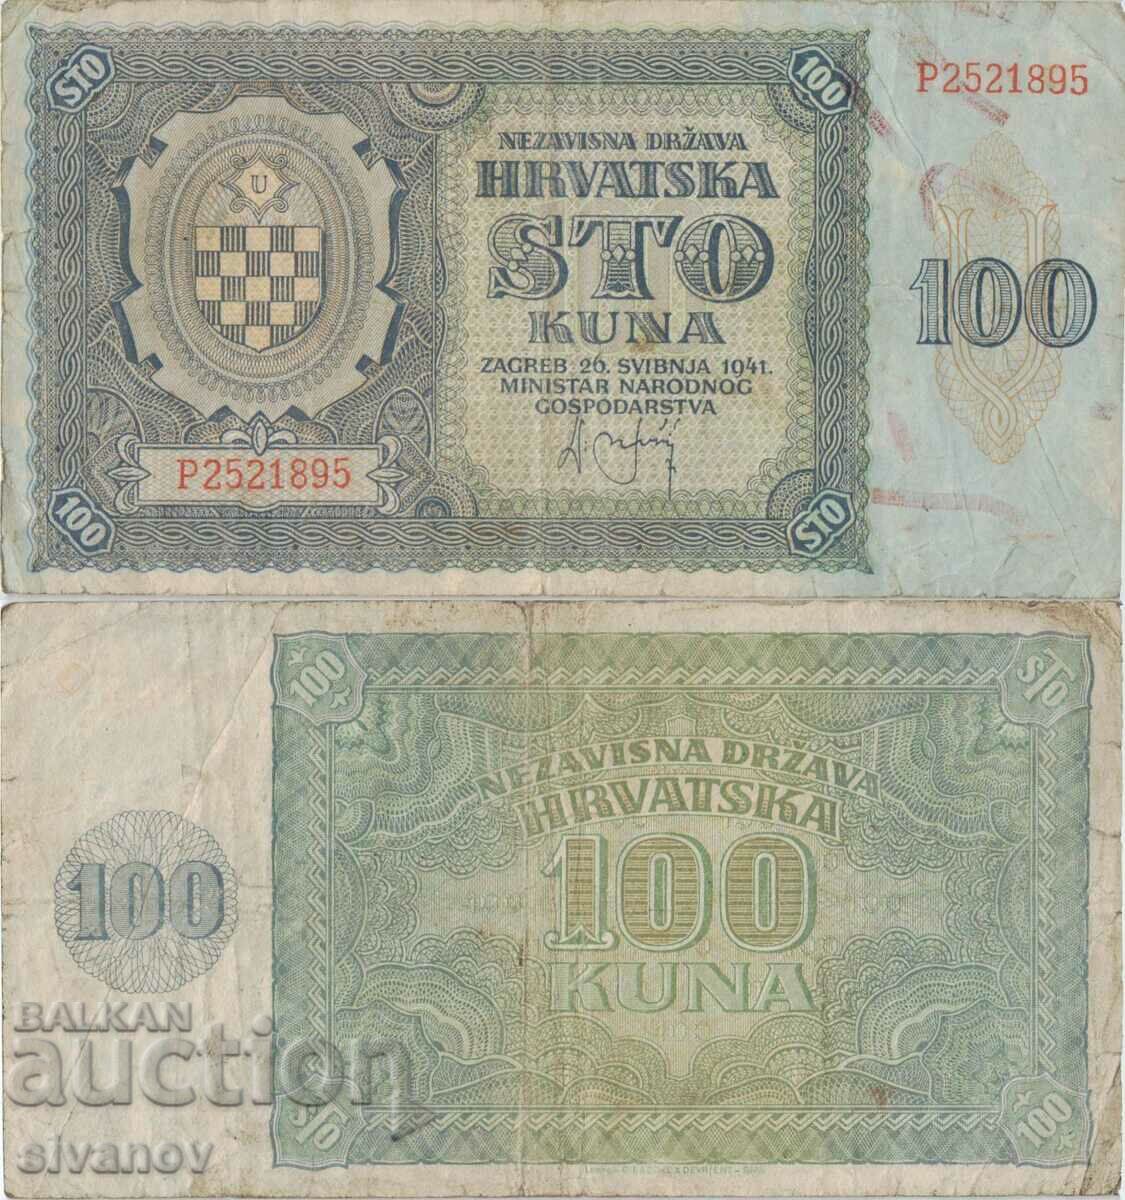 Croatia 100 kuna 1941 banknote #5321